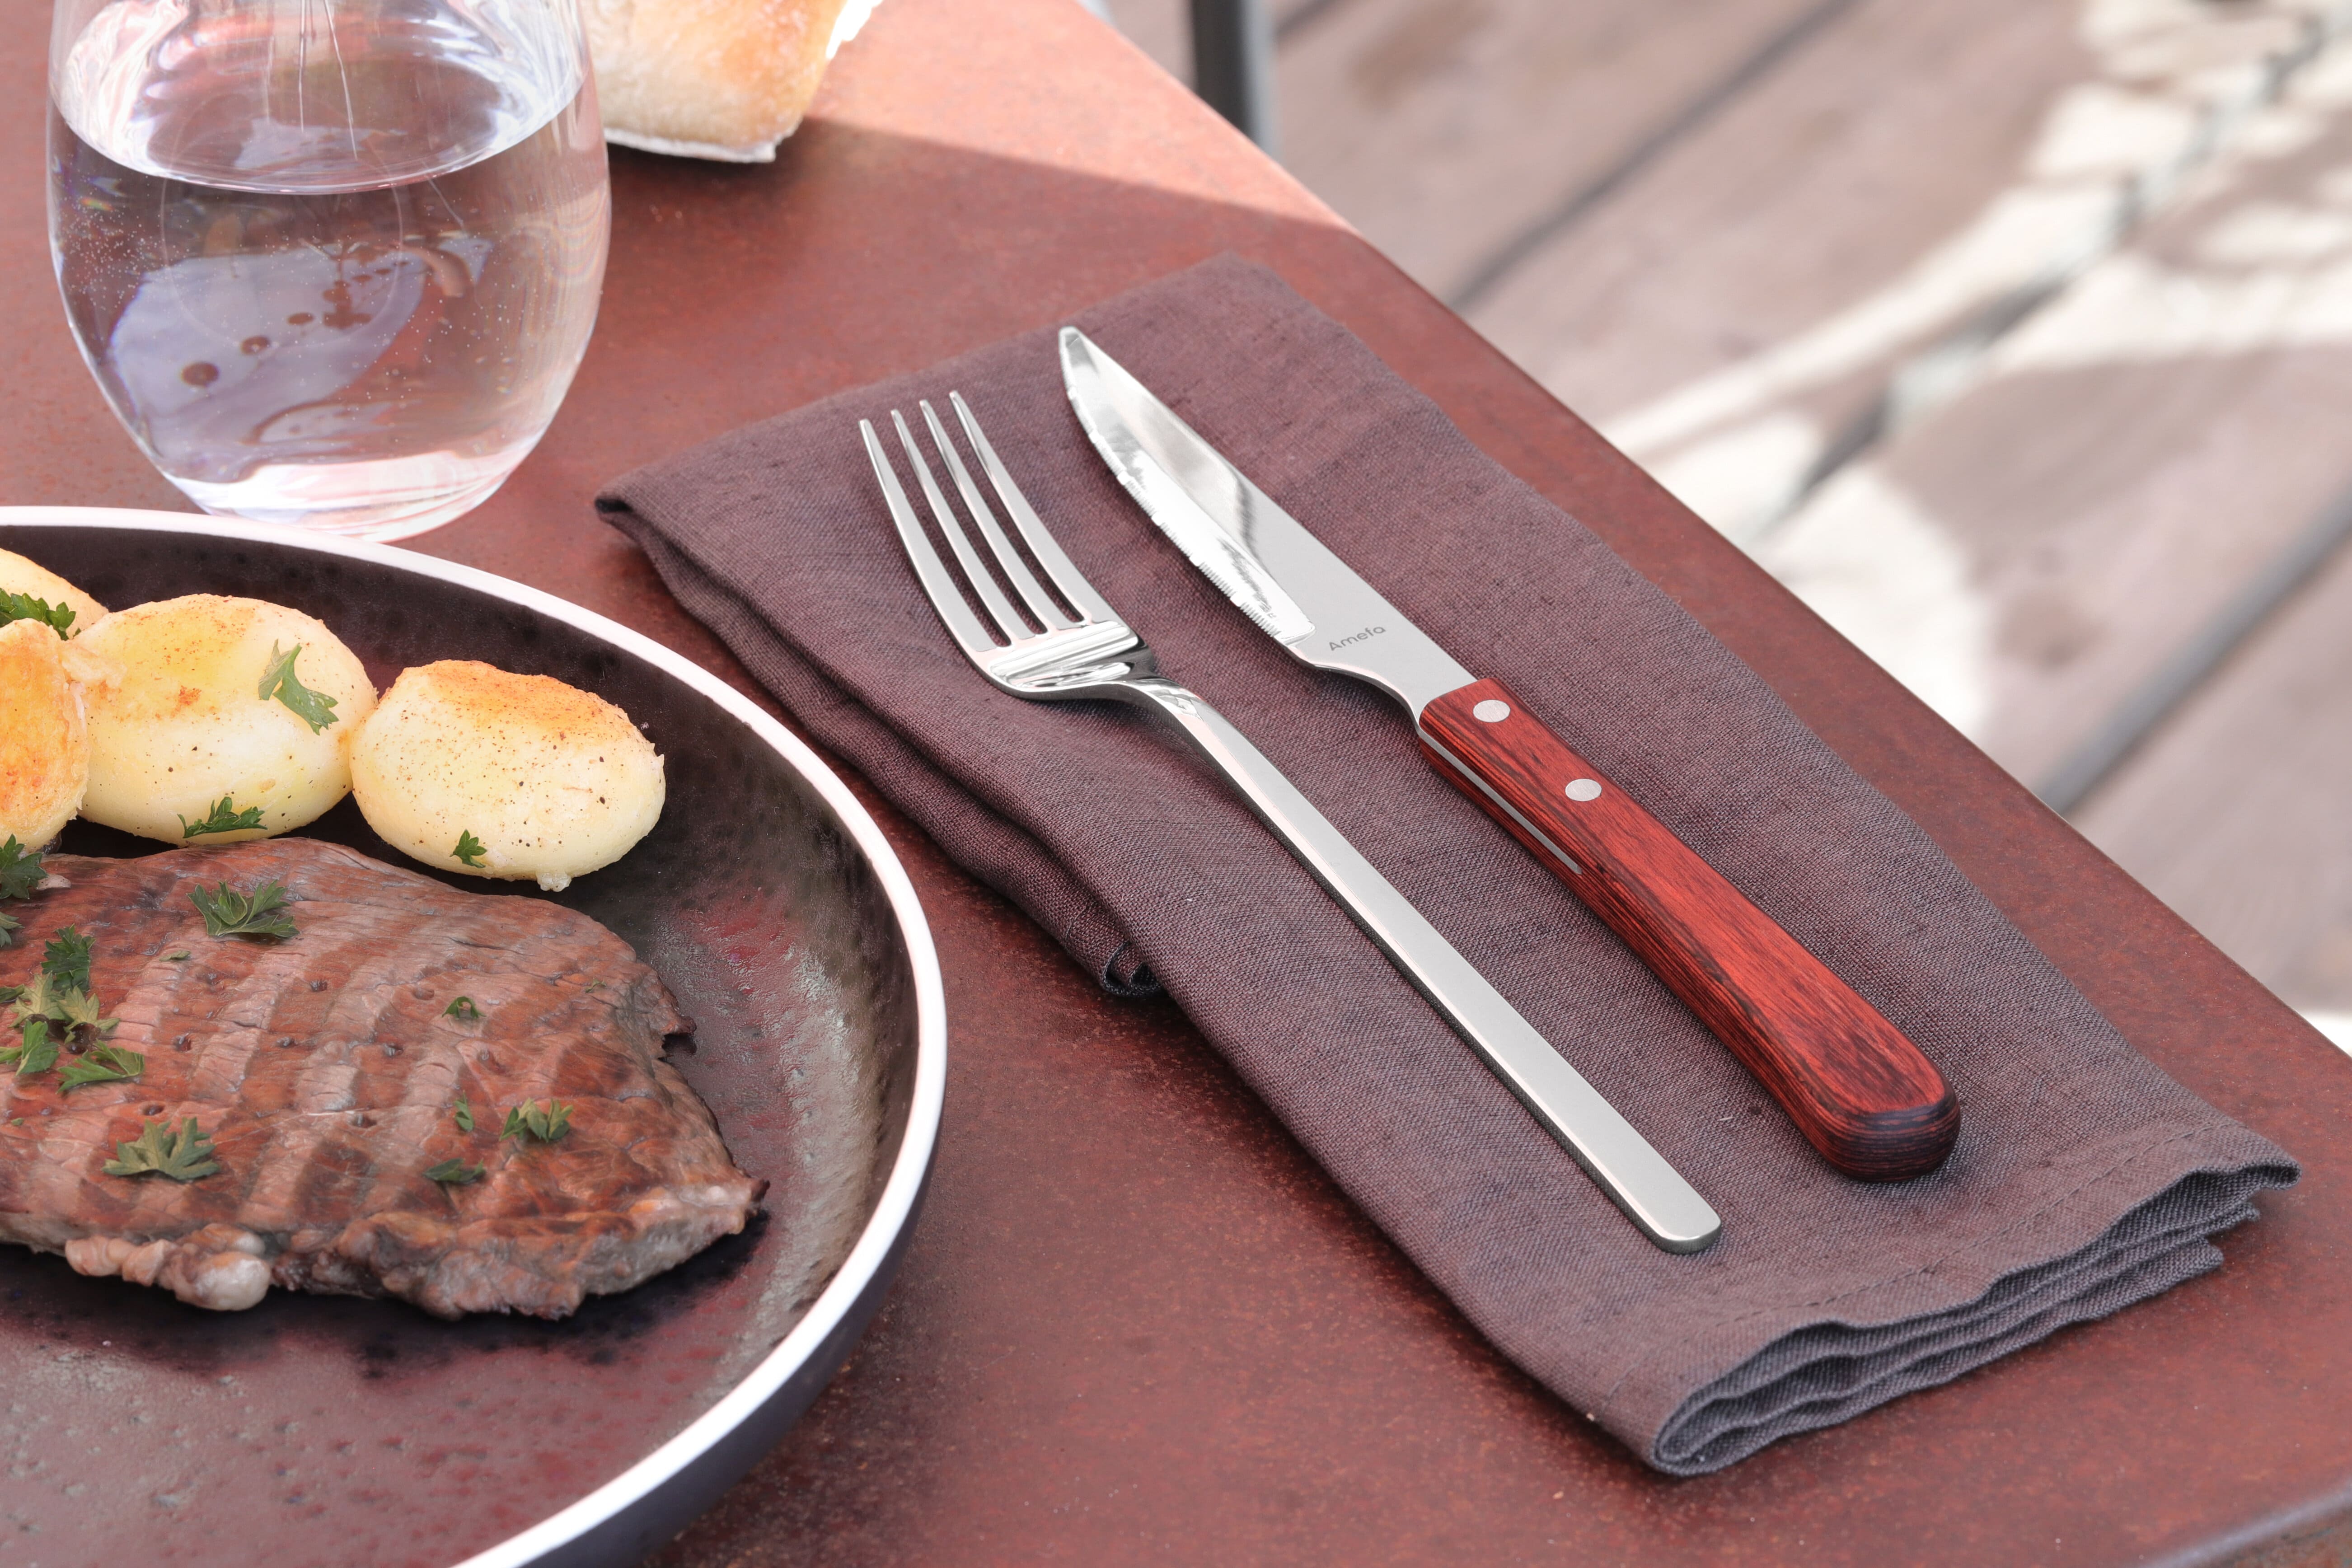 Deux couverts (un couteau et une fouchette) à steak et une assiette en porcelaine de la marque Amefa.